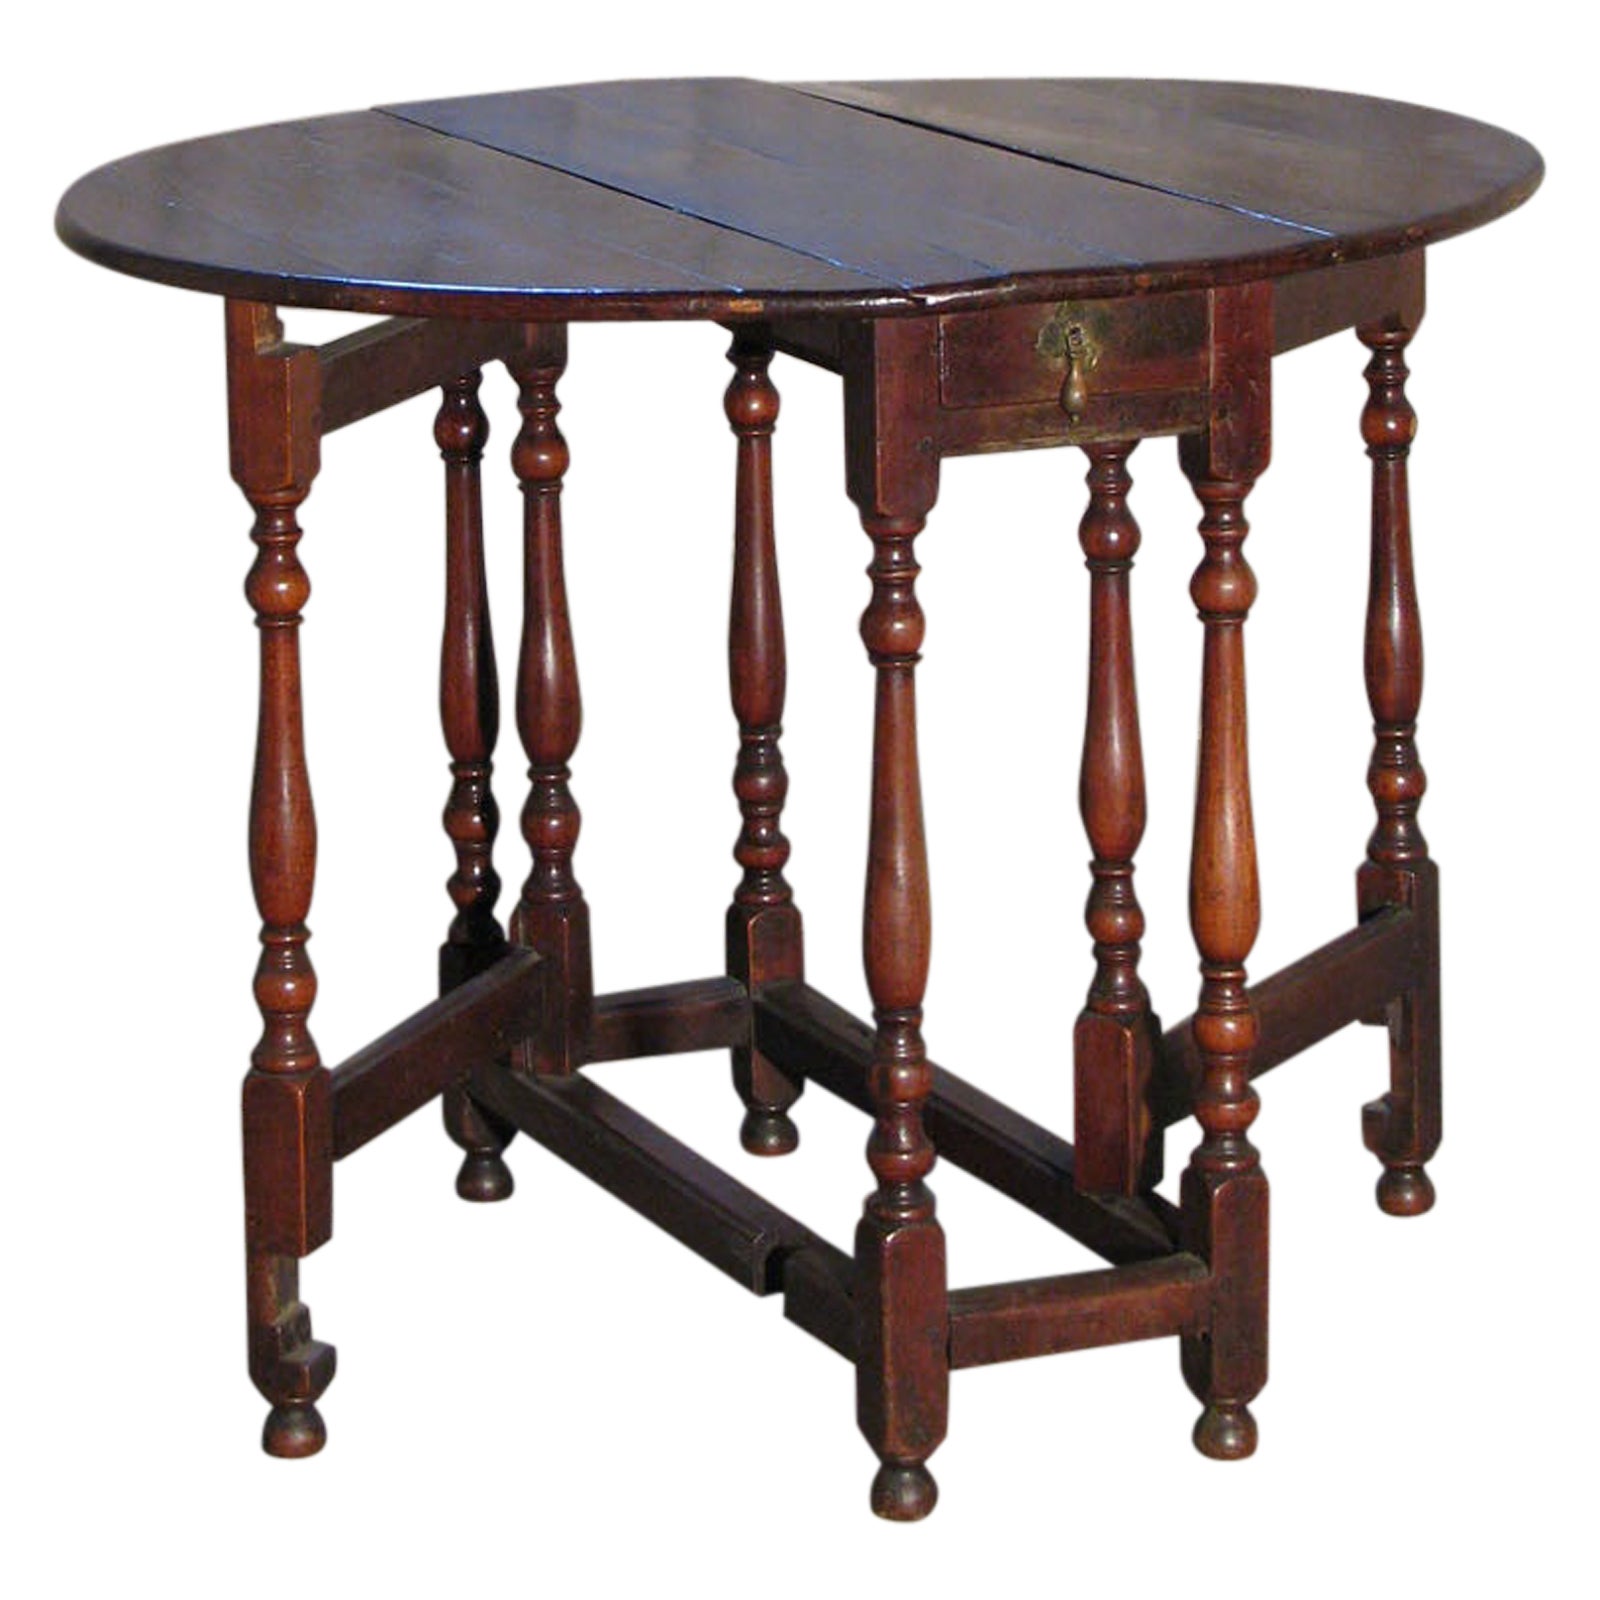 Early 18th Century English Walnut Oval Dropleaf / Gateleg Table